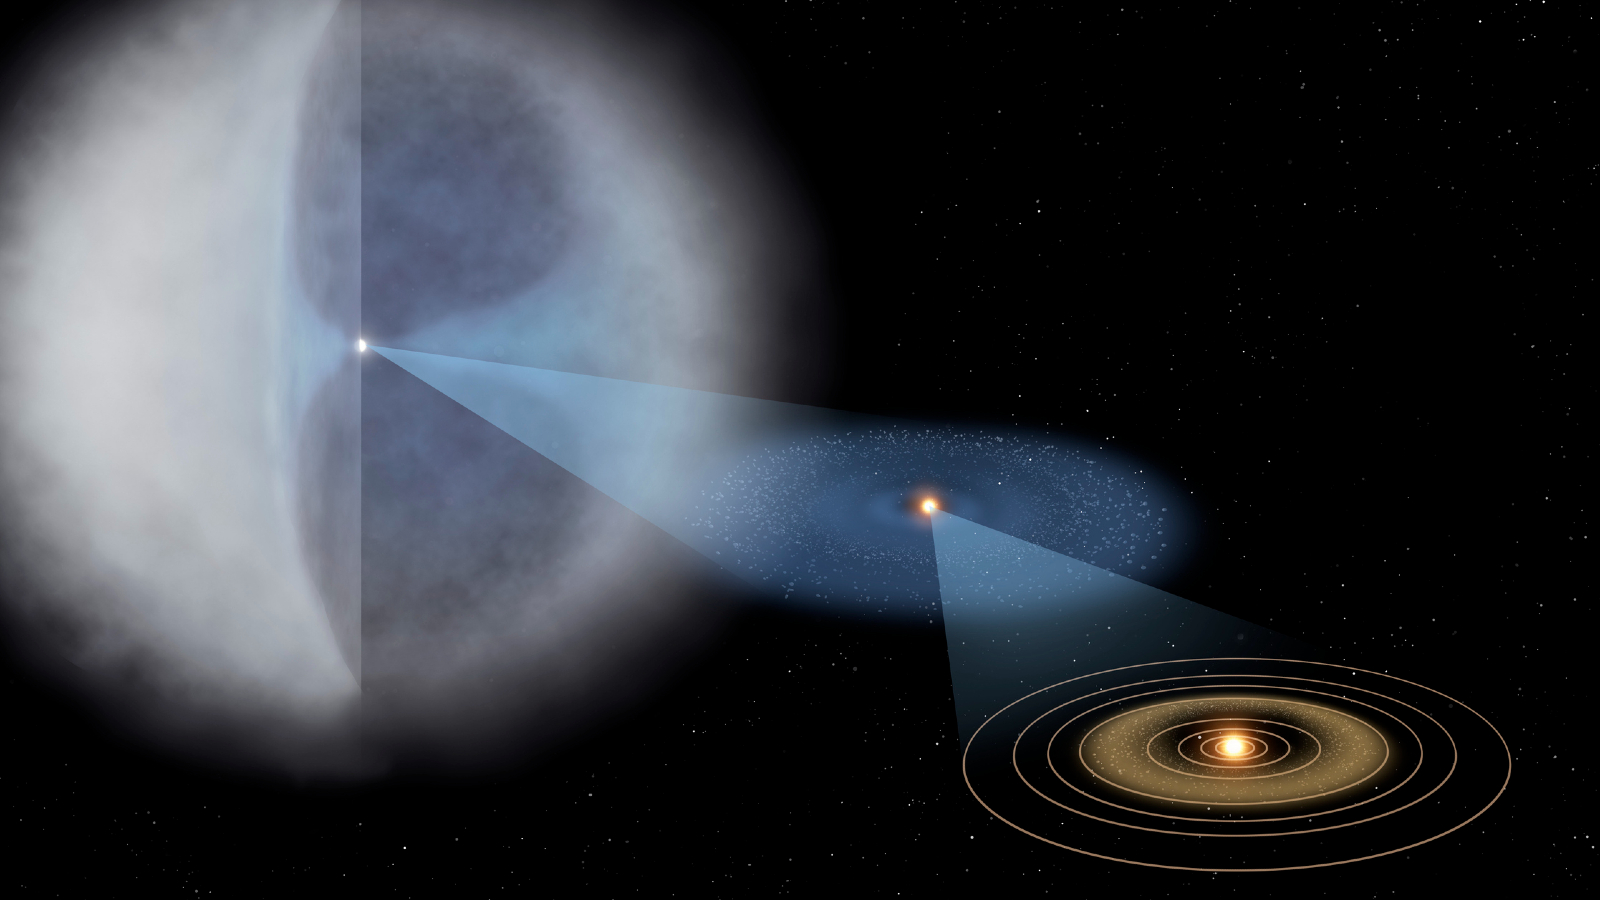 Сравнение размеров Облака Оорта по сравнению с остальной частью Солнечной системы.